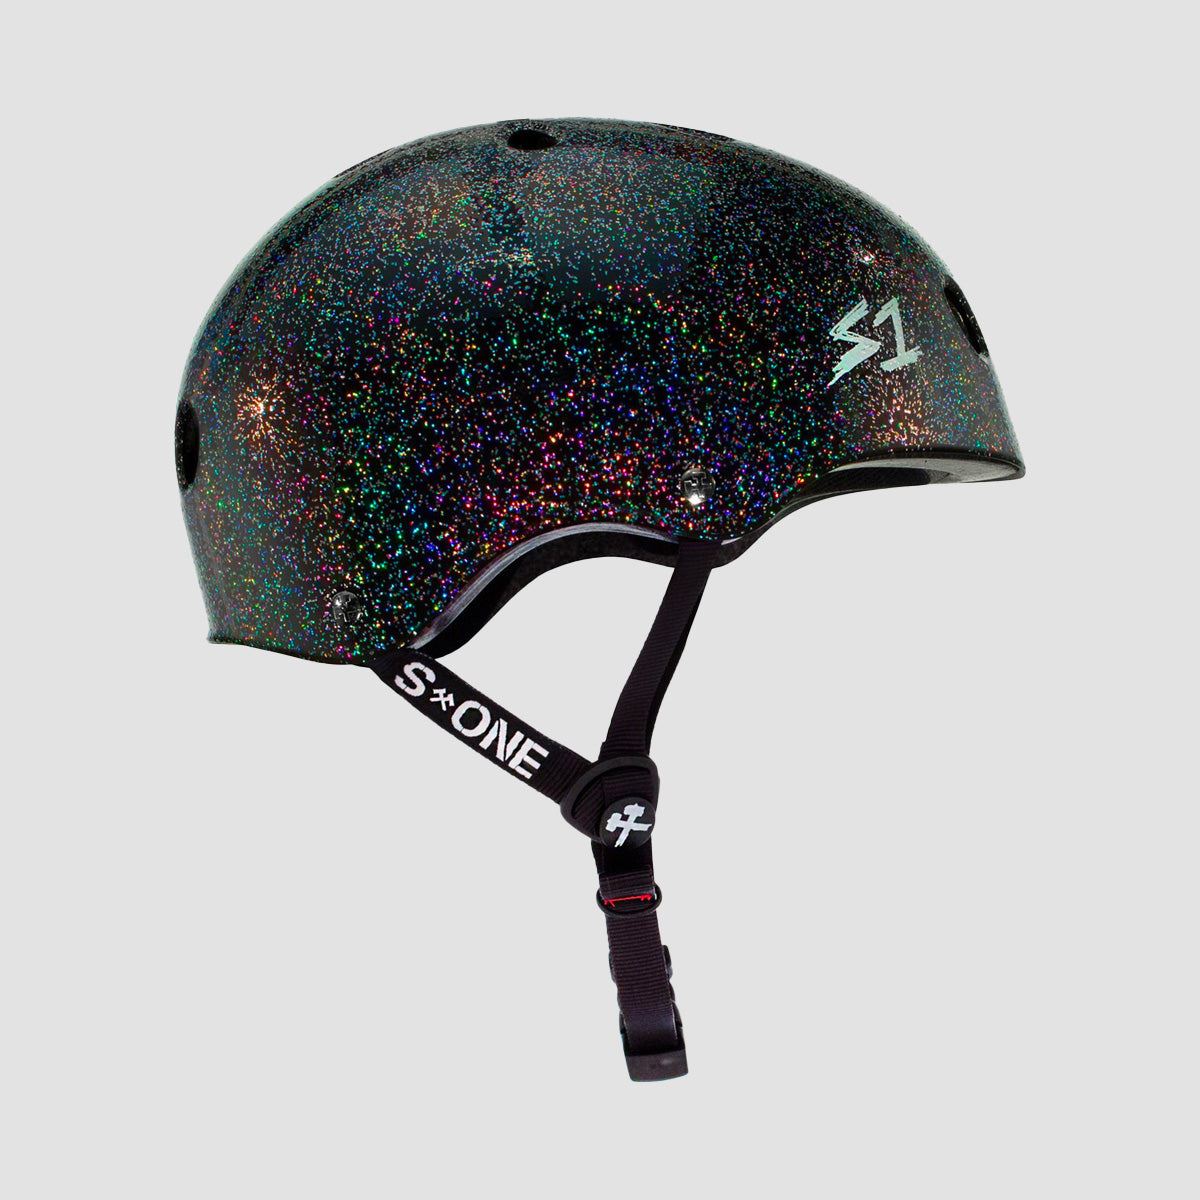 S1 Lifer Helmet Black Gloss Glitter